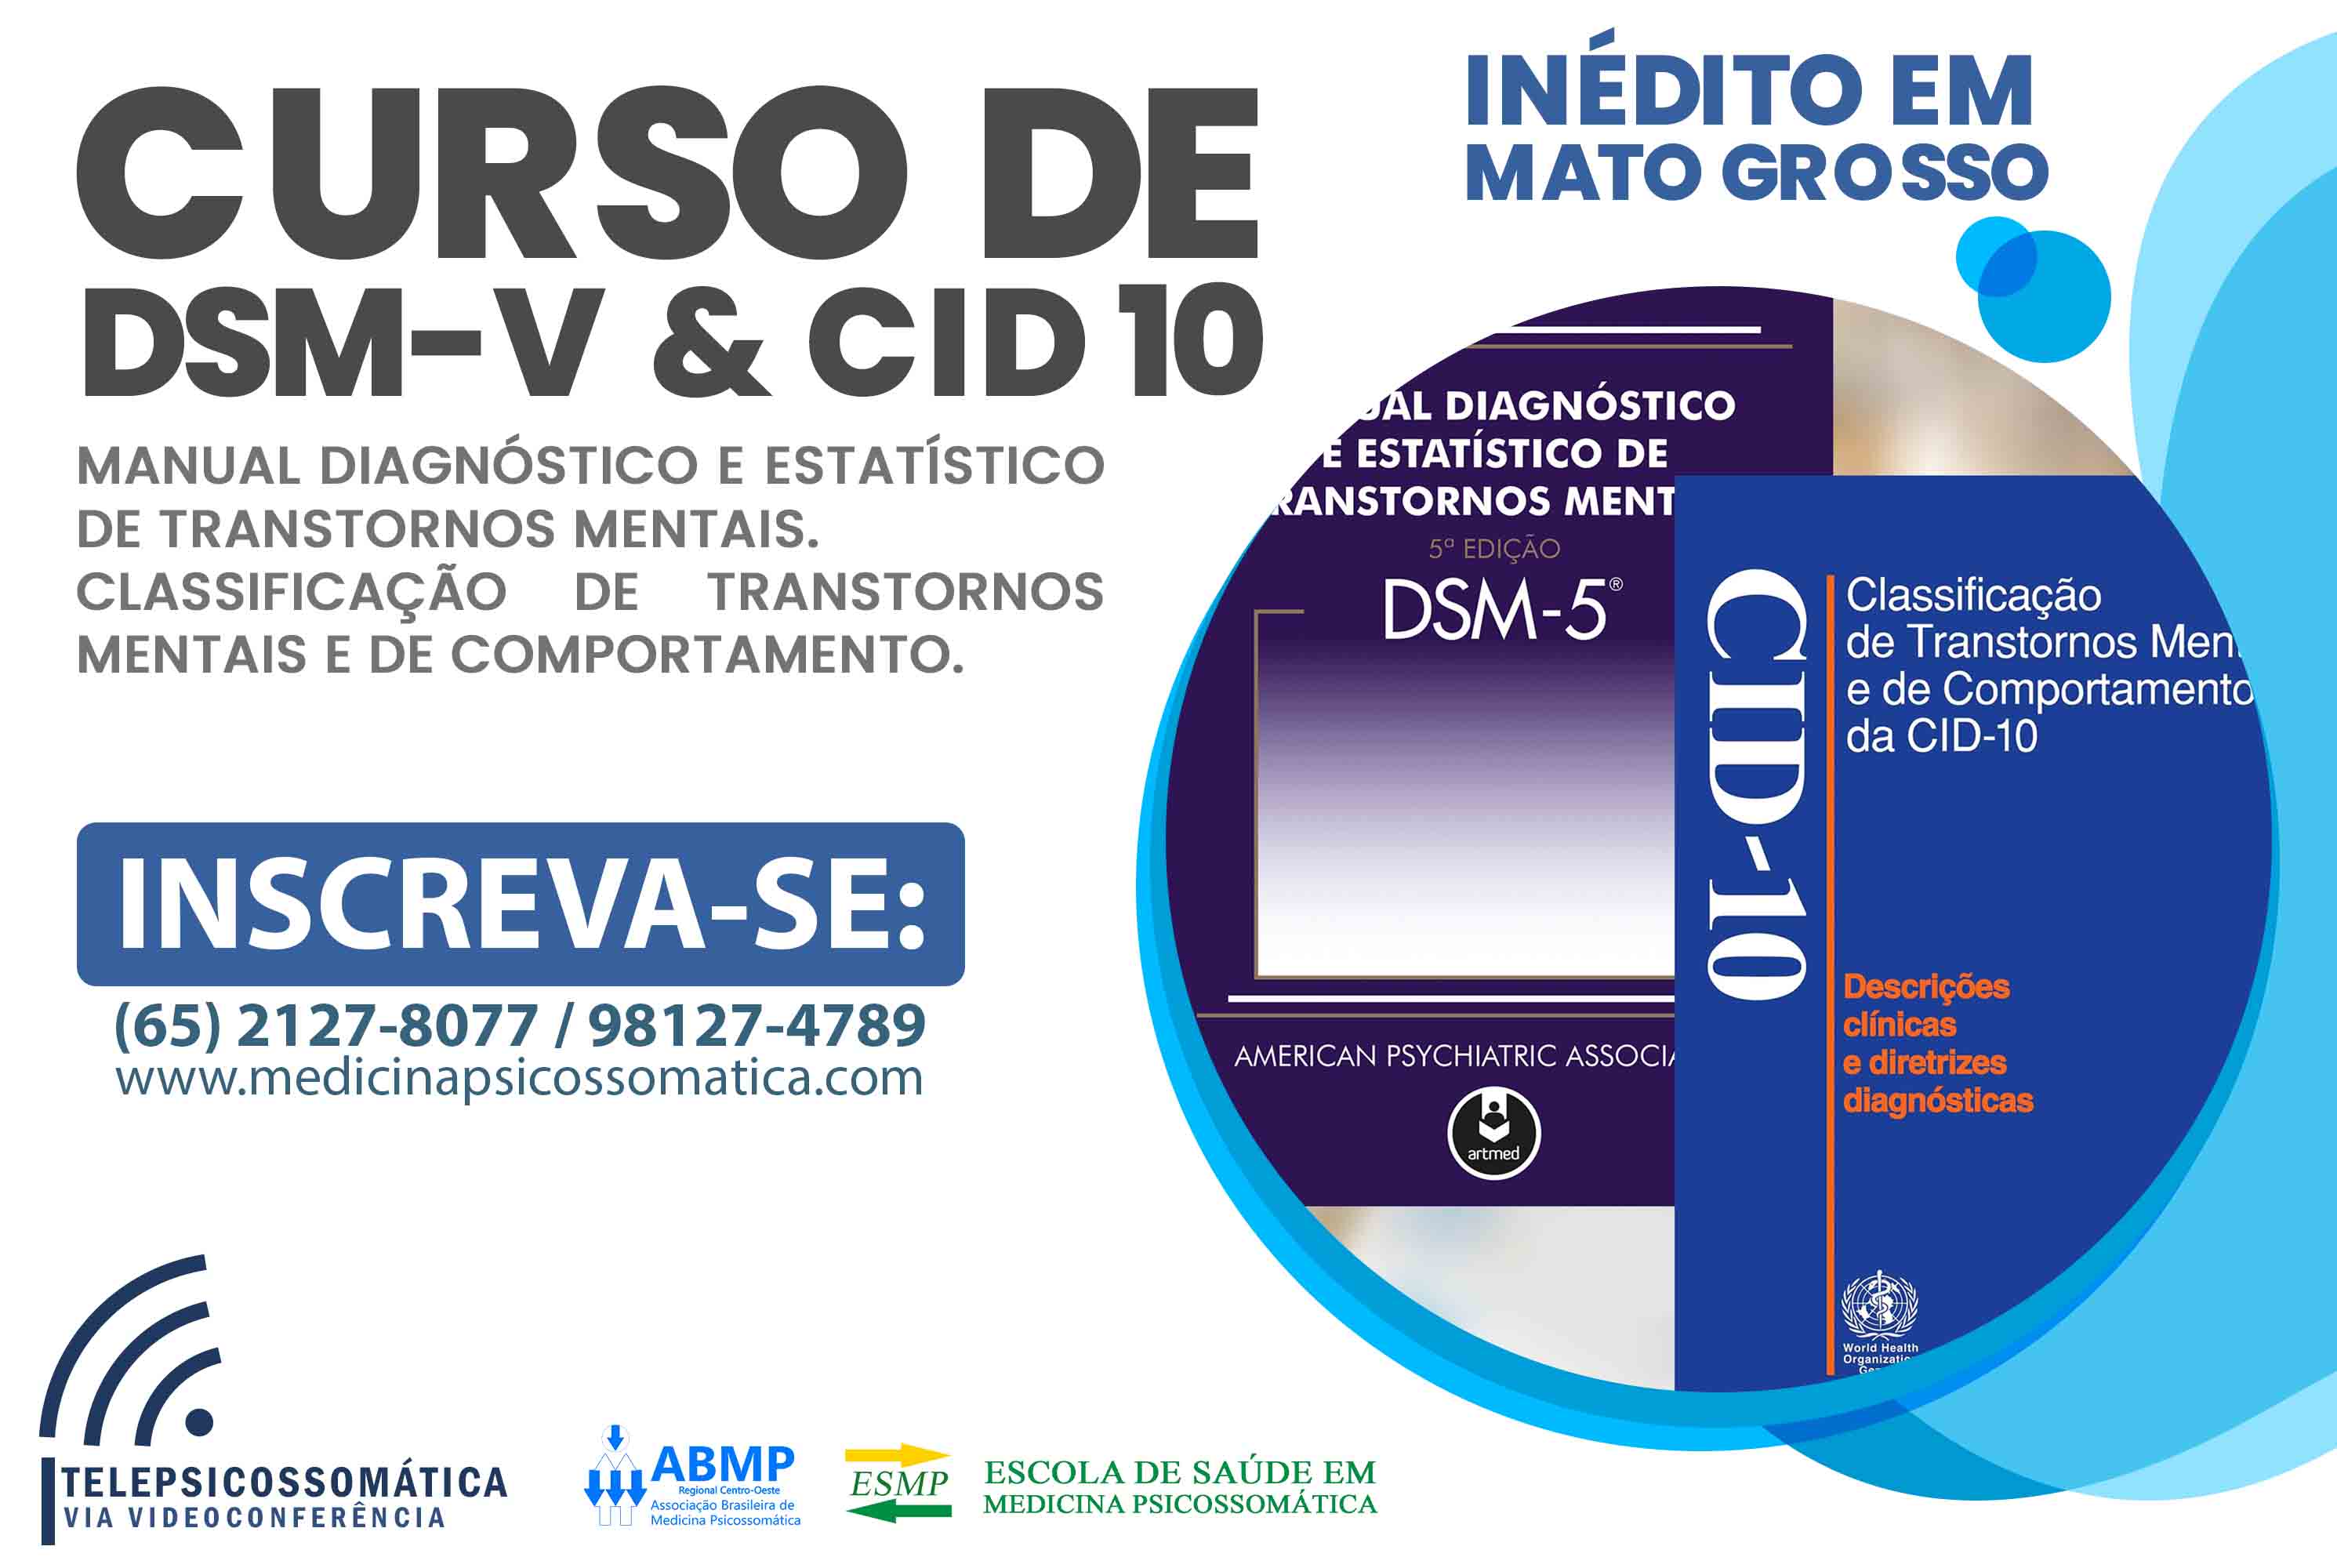 Curso DSM-5 & CID-10